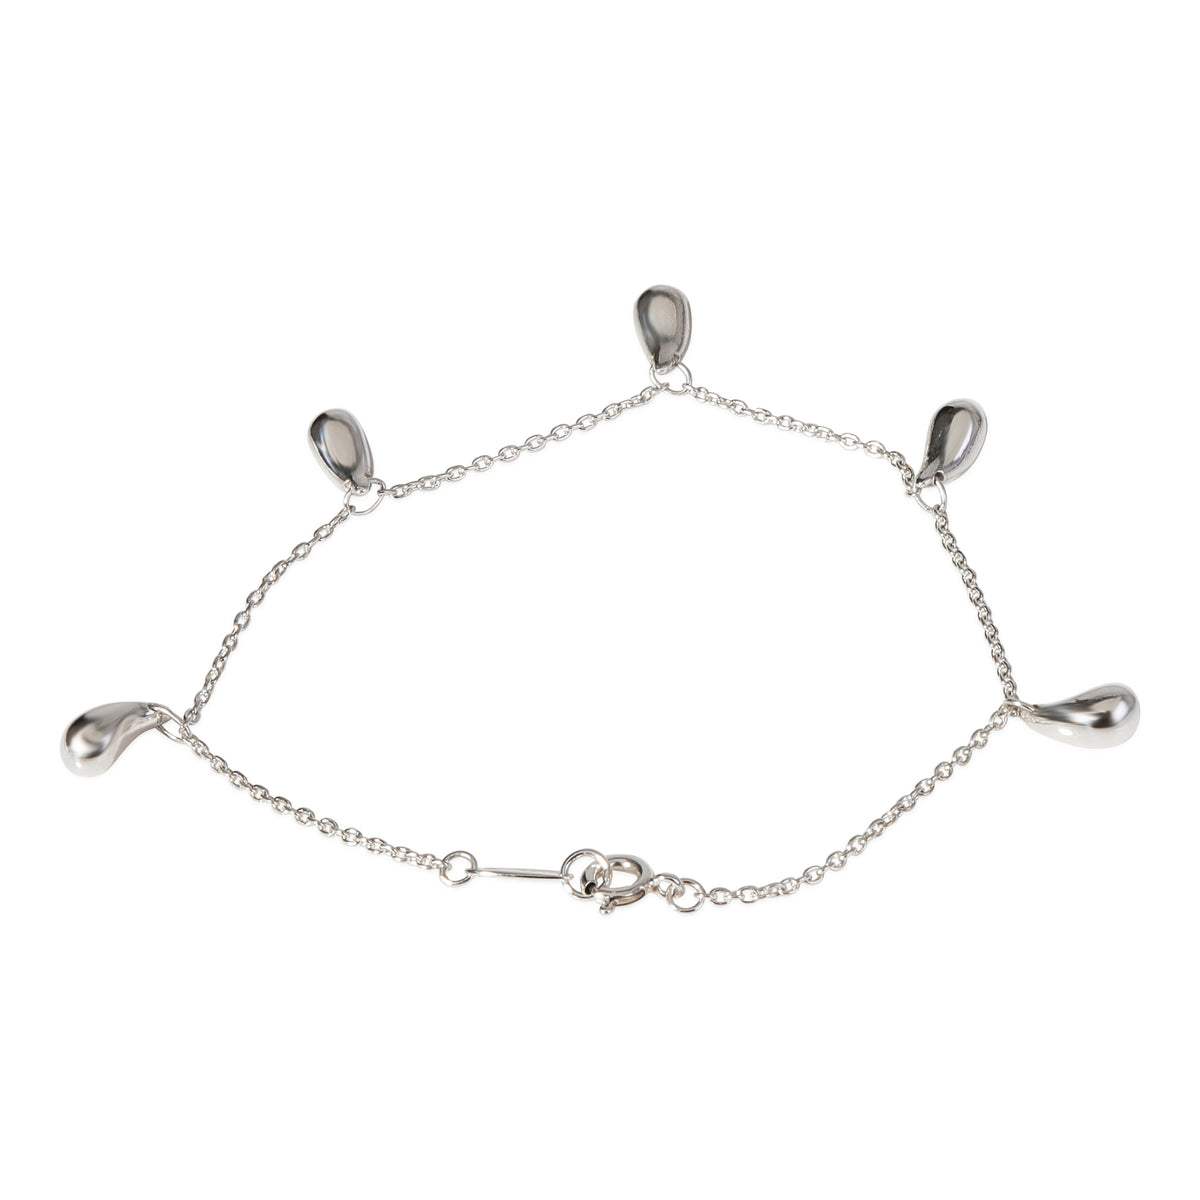 Tiffany & Co. Elsa Peretti Teardrop Bracelet in Sterling Silver